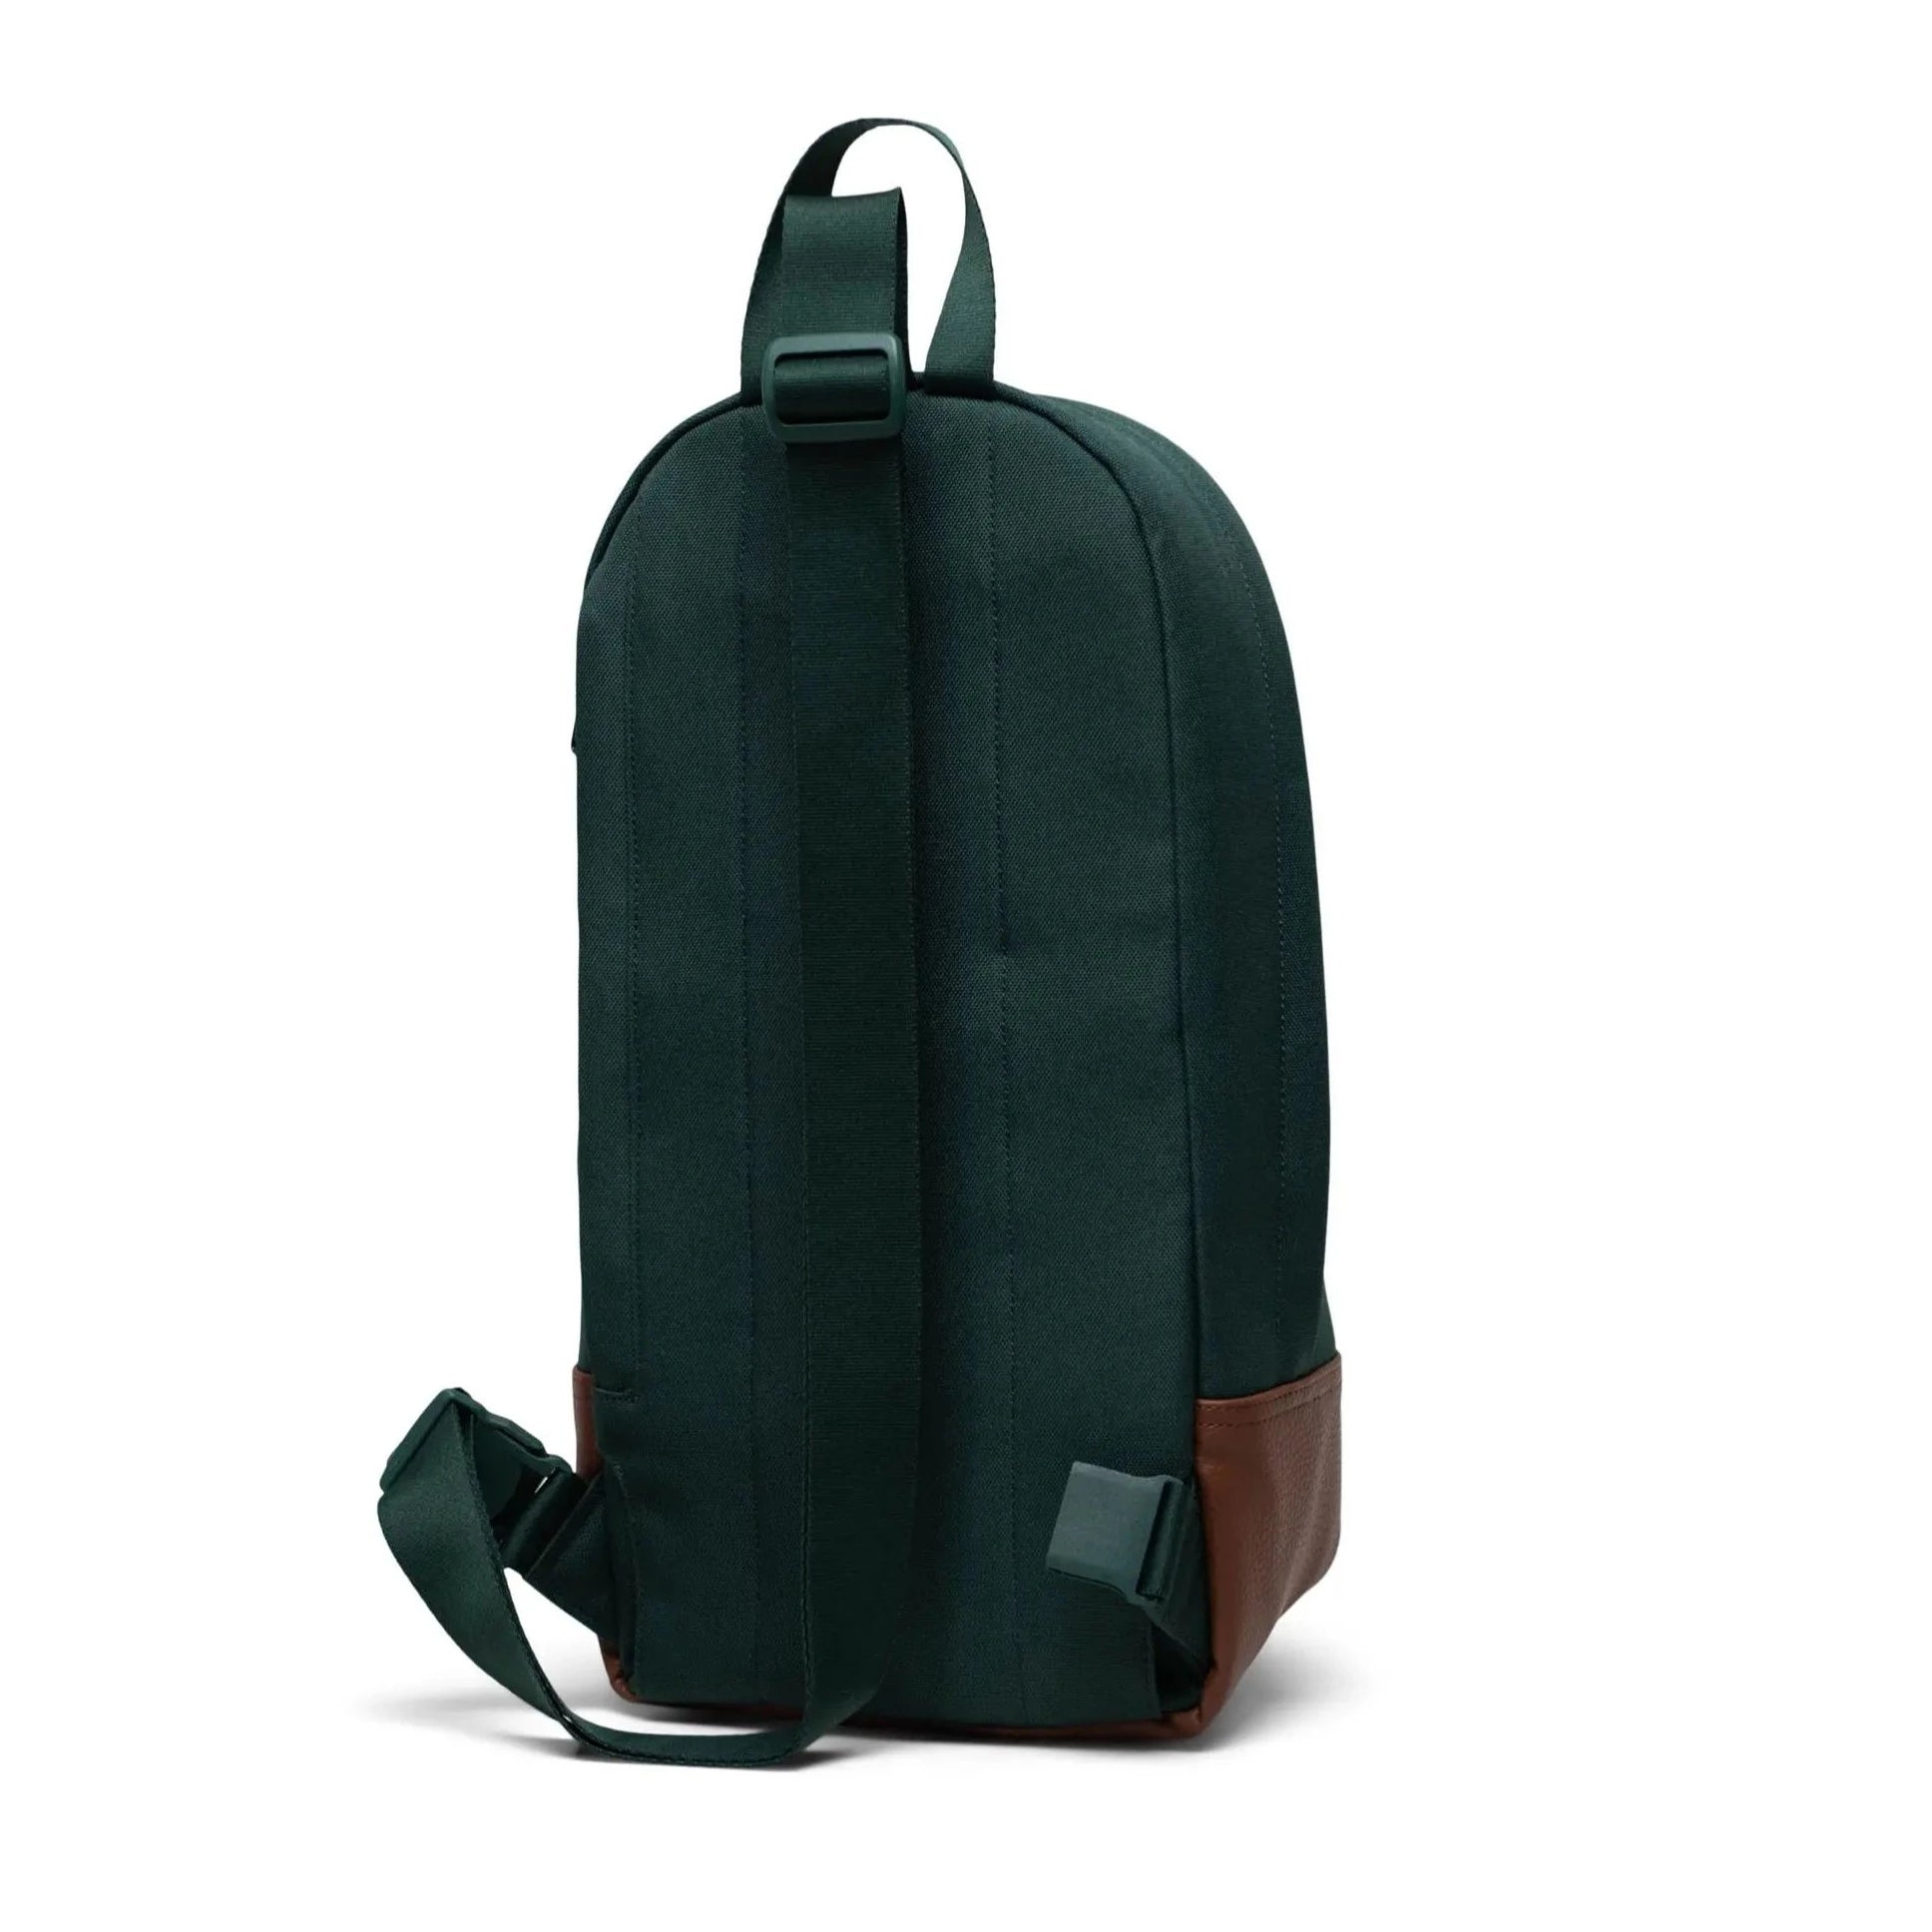 Herschel Heritage Shoulder Bag - Trekking Green/Tan